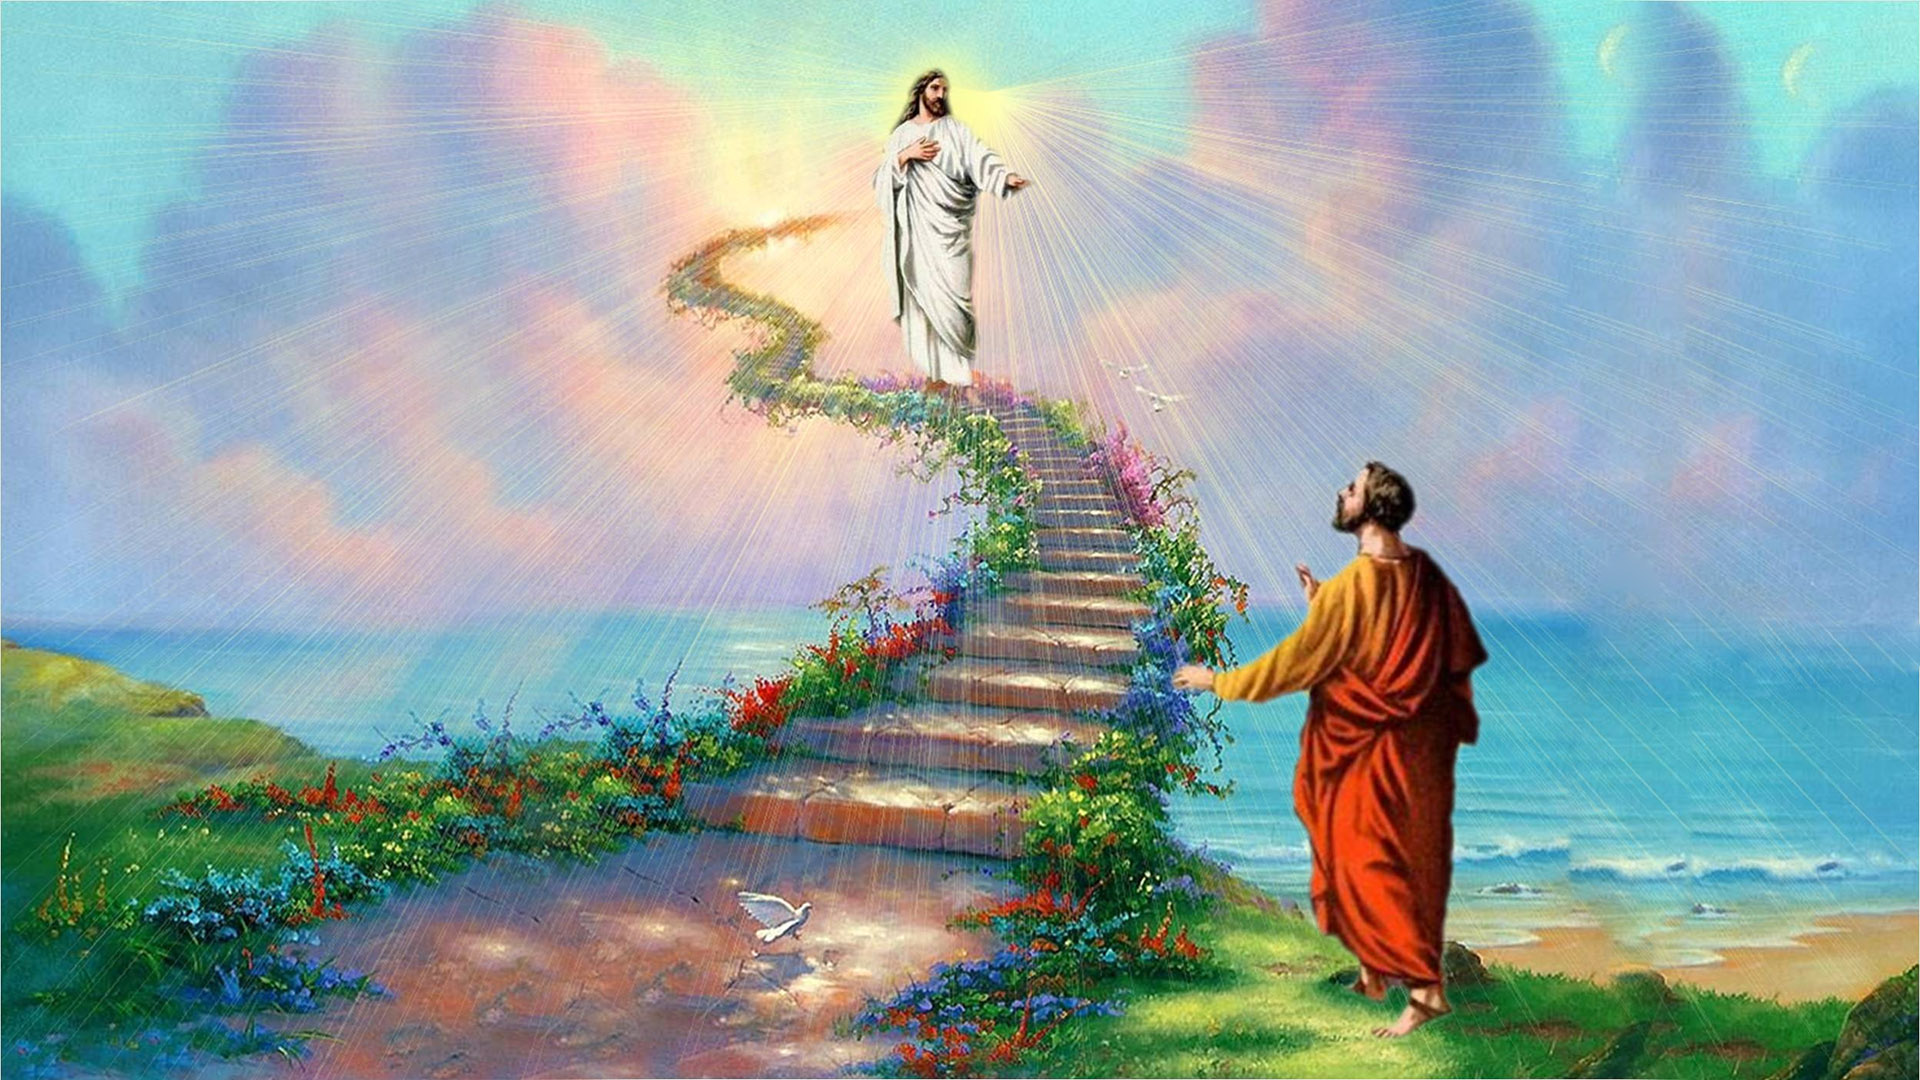 Images Of Jesus In Heaven